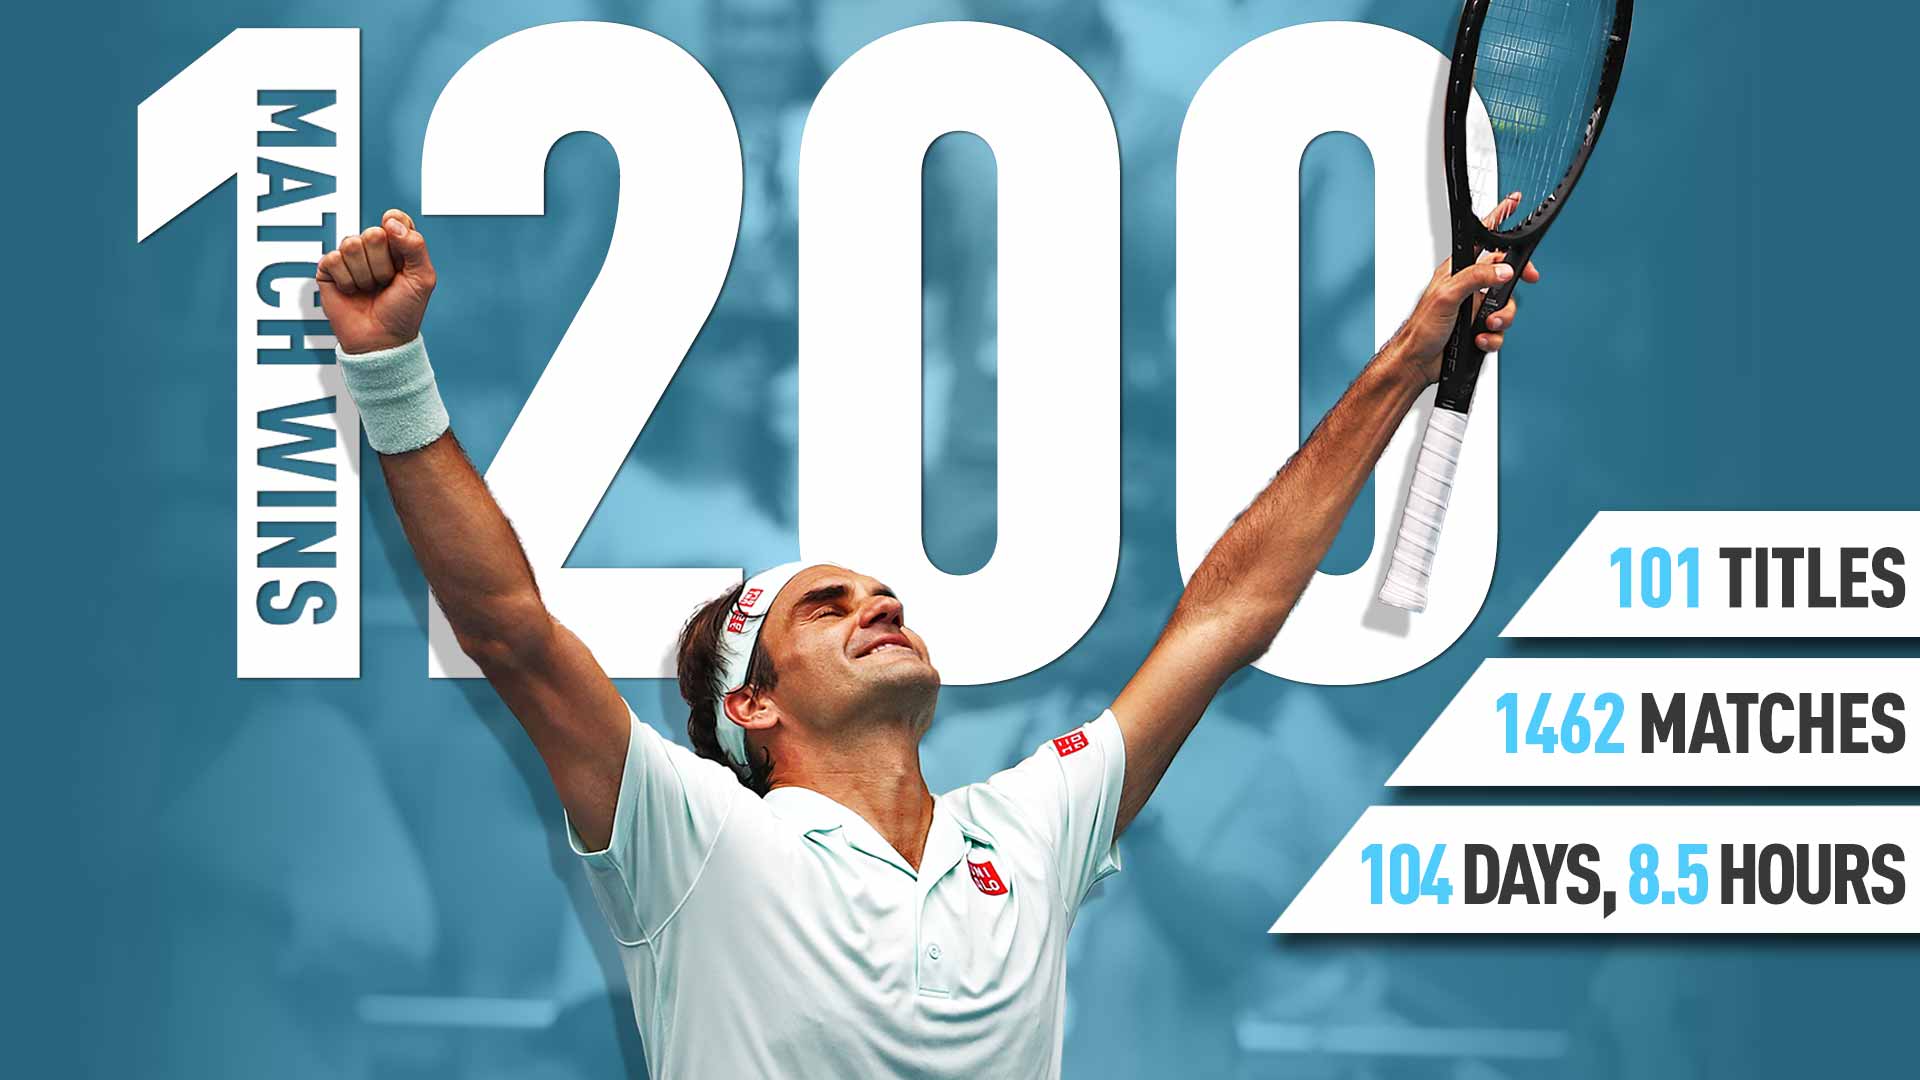 Статистиката: Федерер стана вторият играч в историята с 1200 победи (видео)